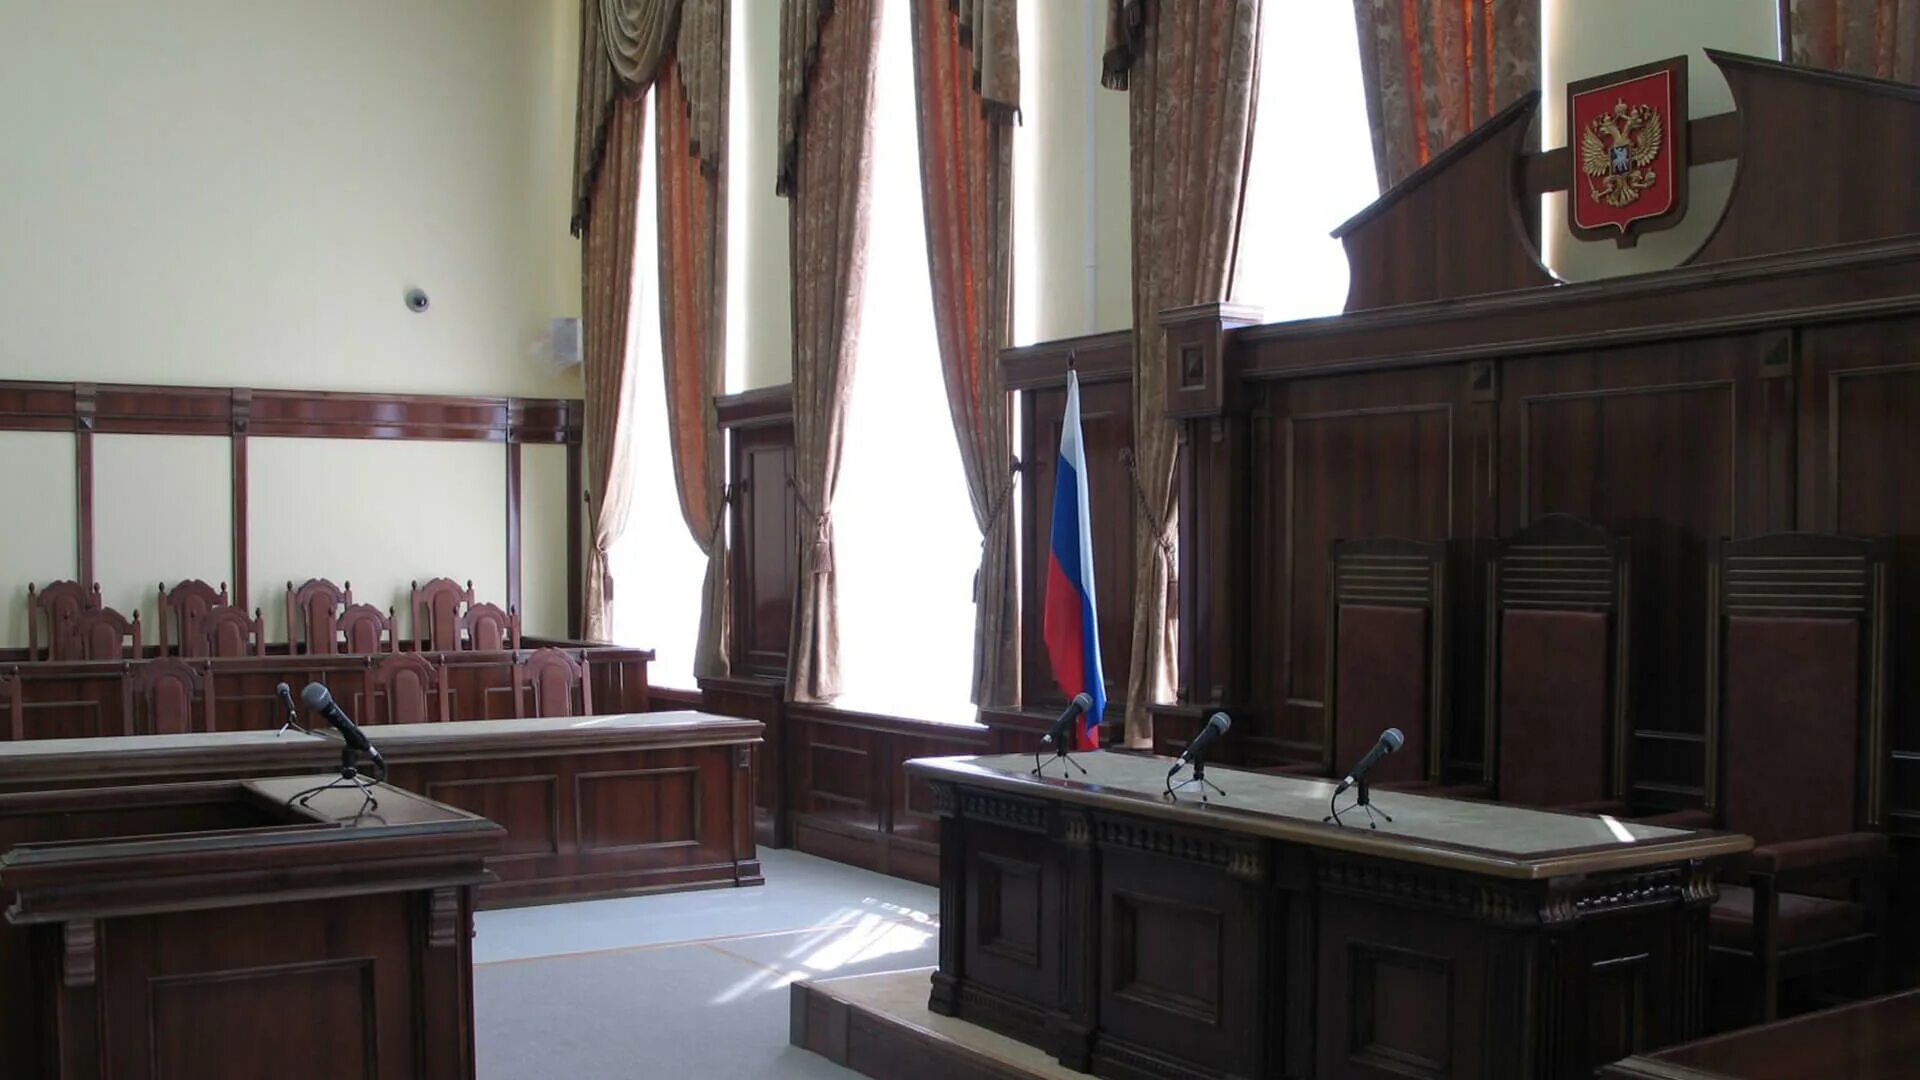 Областной суд Иваново Арсения 3. Зал заседания суда. Комната суда. Залы судебных заседаний.